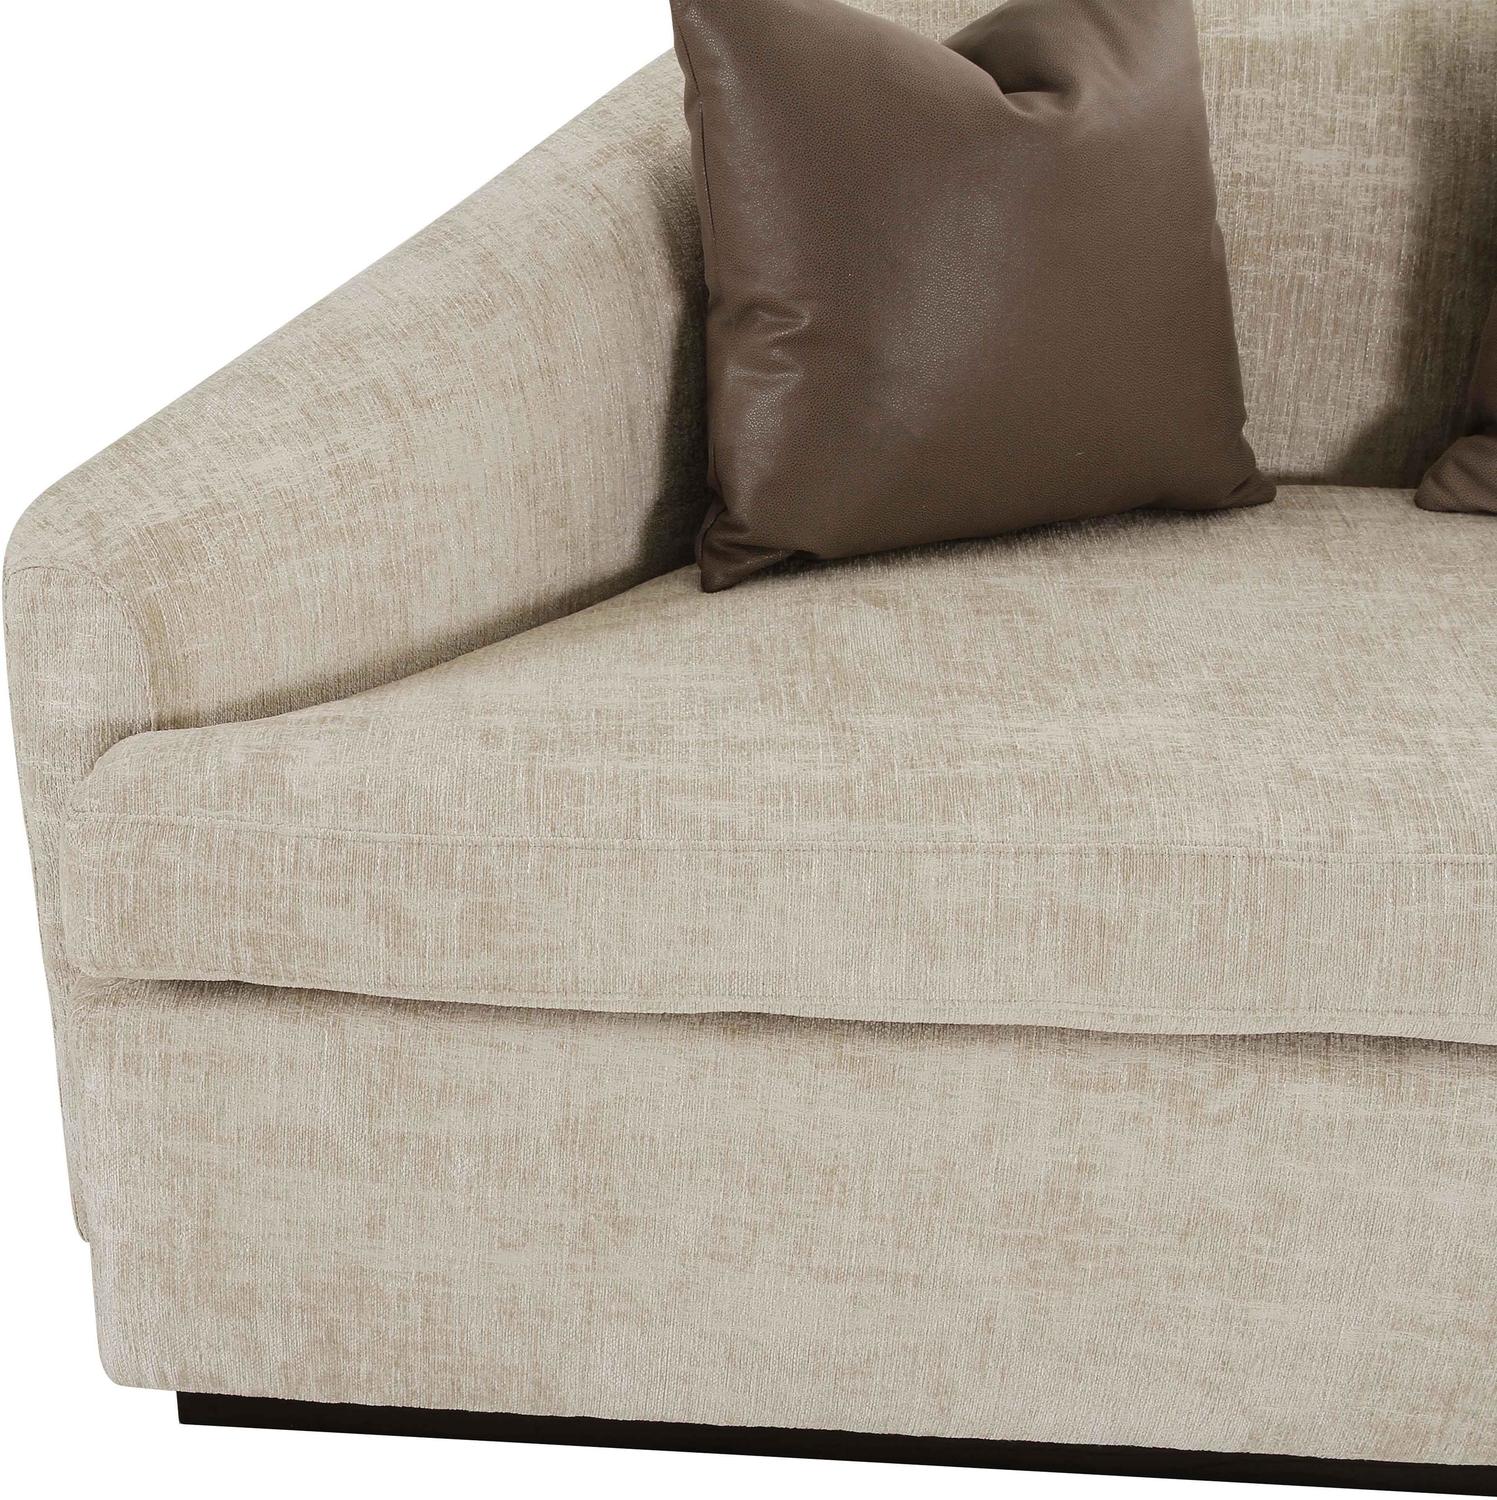 cream modern sofa Contemporary Design Furniture Sofas Grey